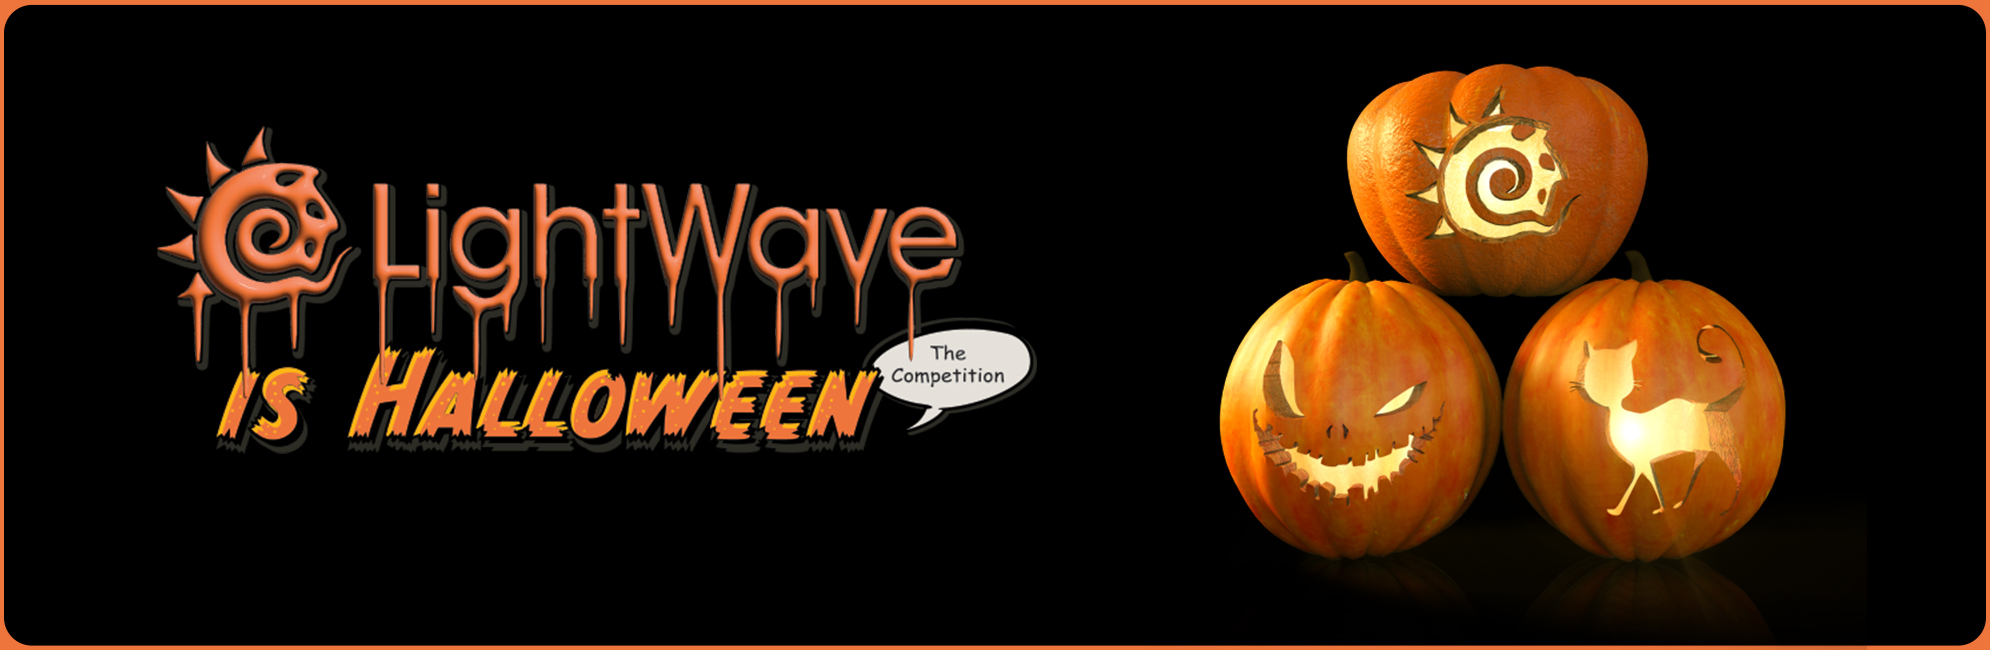 Nome: LightWave is Halloween  LightWave 3D Promo 20320918.jpg
Visite: 87
Dimensione: 387.4 KB